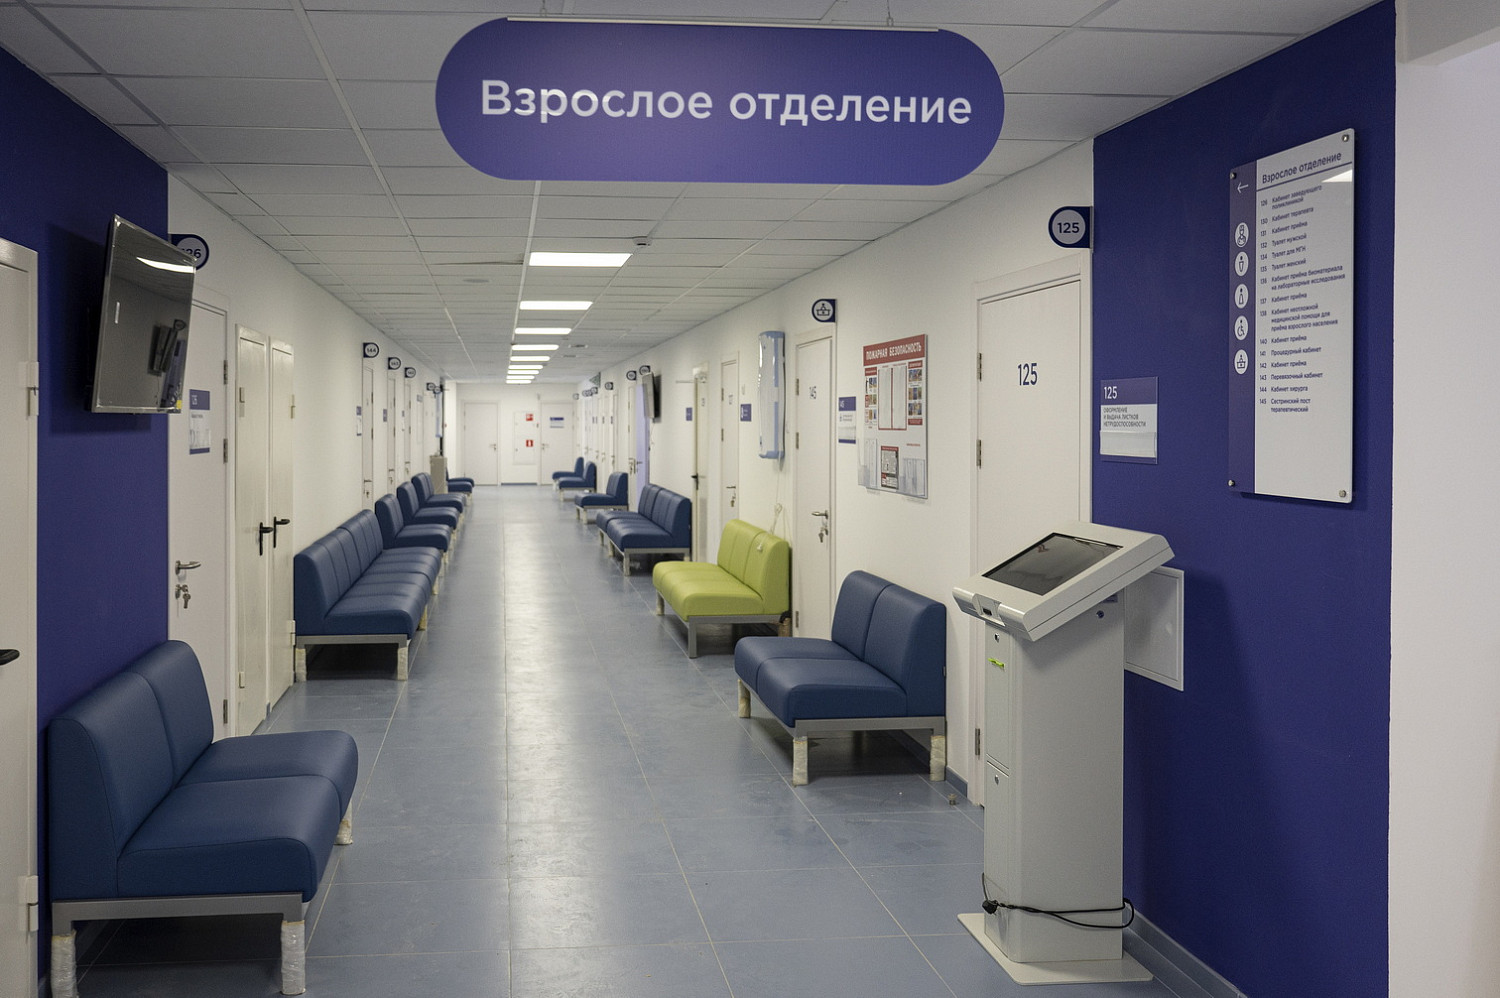 Алексей Спасский проверил новую поликлинику в Боброво, которая готовится к открытию в конце марта